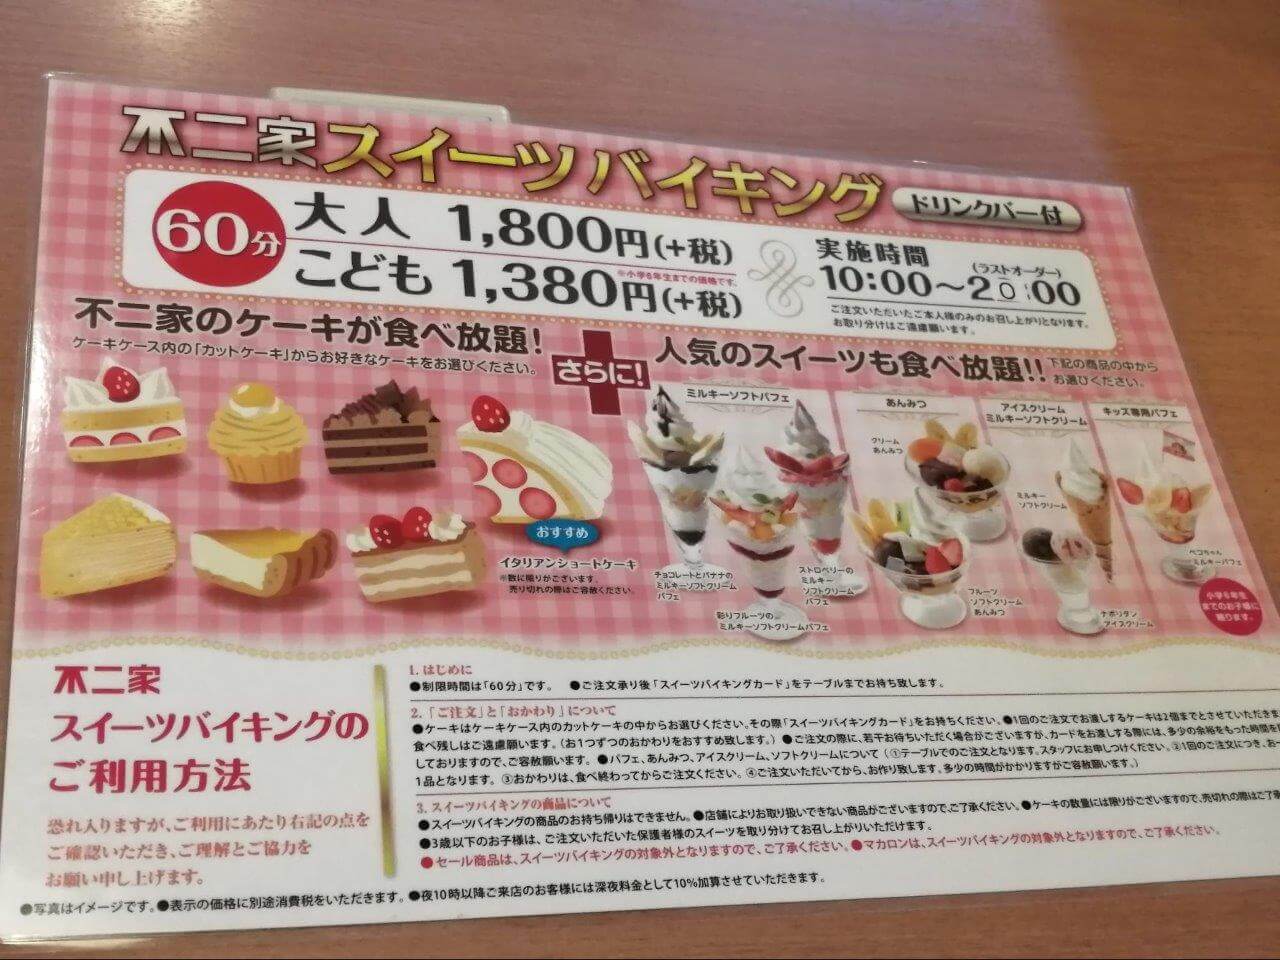 不二家のケーキ パフェ食べ放題レポ 21大宮 値段やルール 元を取るには 埼玉で探そう